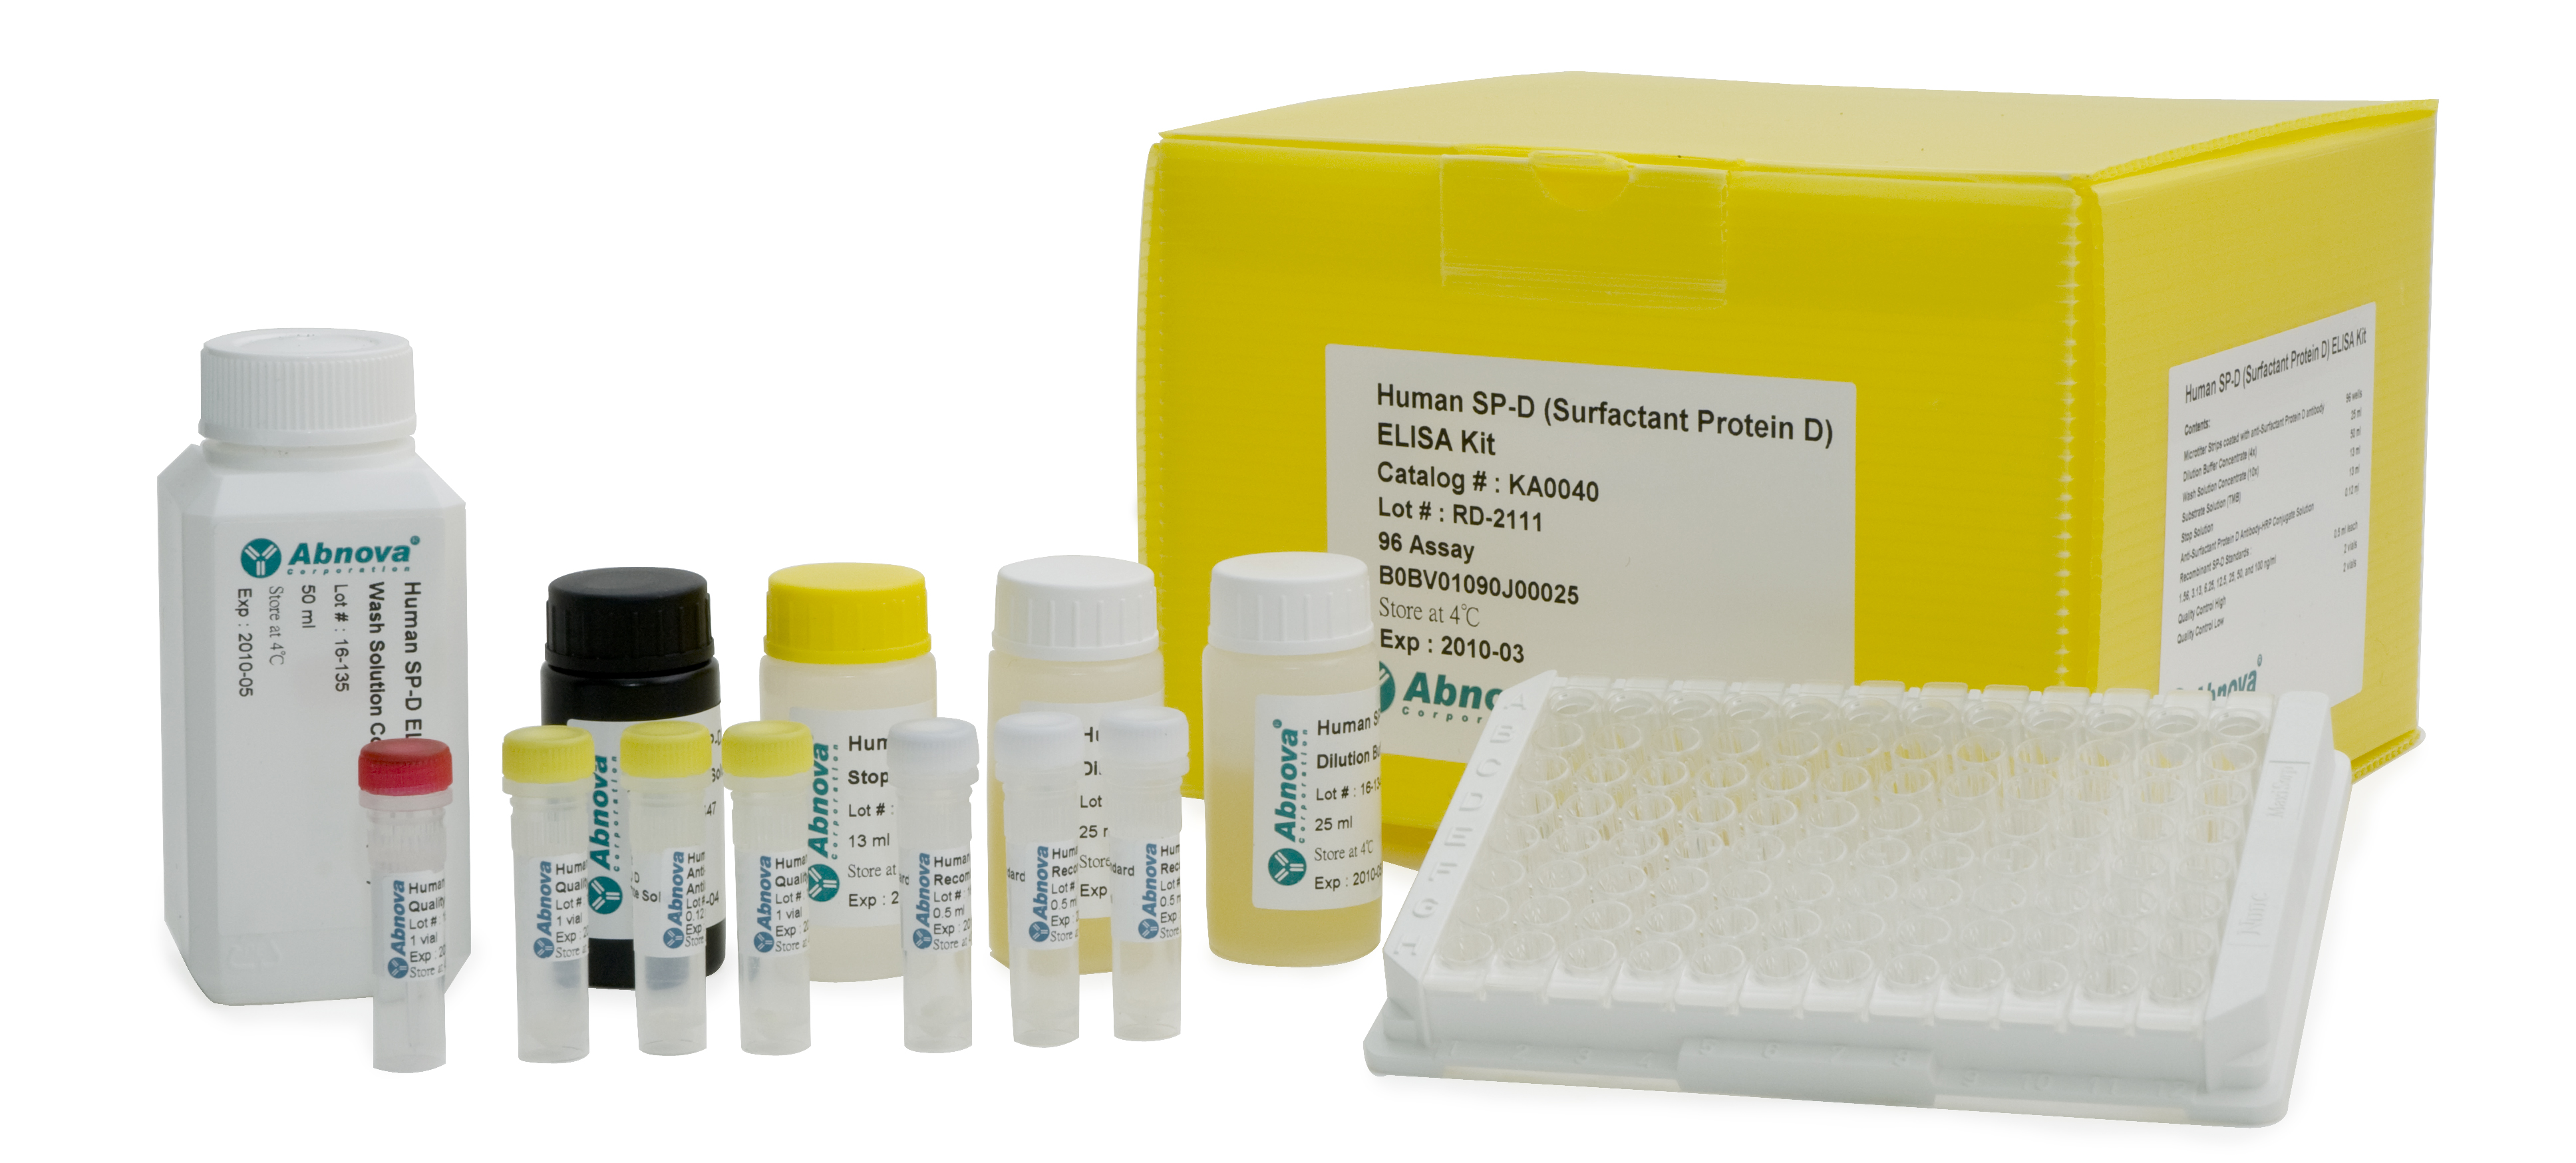 登革热(Dengue virus)IgG/IgM ELISA试剂盒与登革热抗体工具